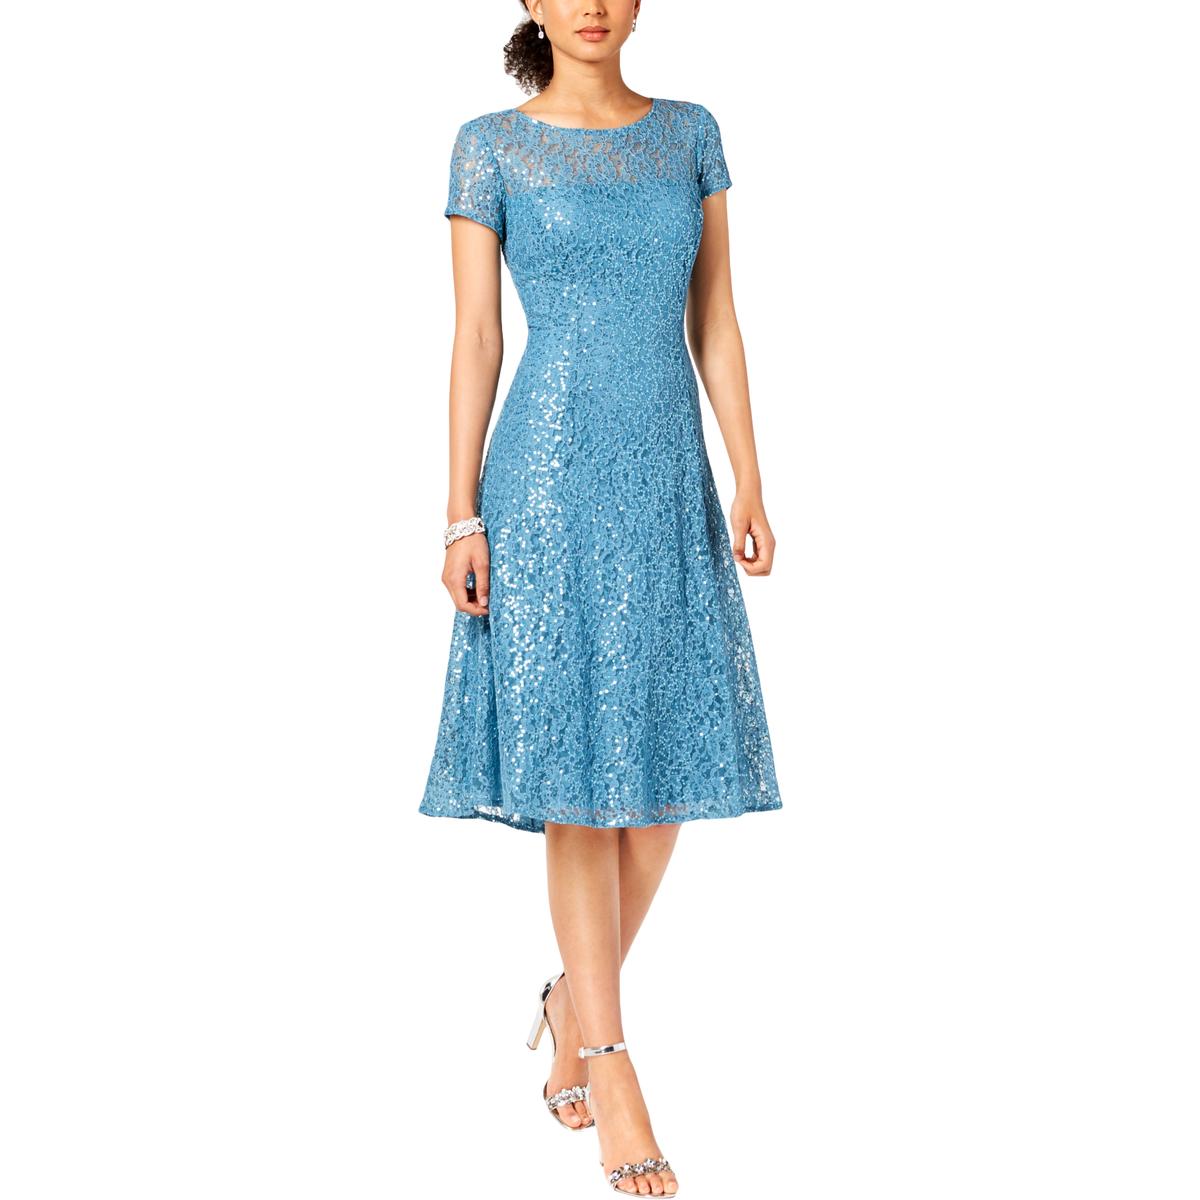 SLNY Womens Blue Lace Sequined Party Midi Dress 2 BHFO 0045 | eBay